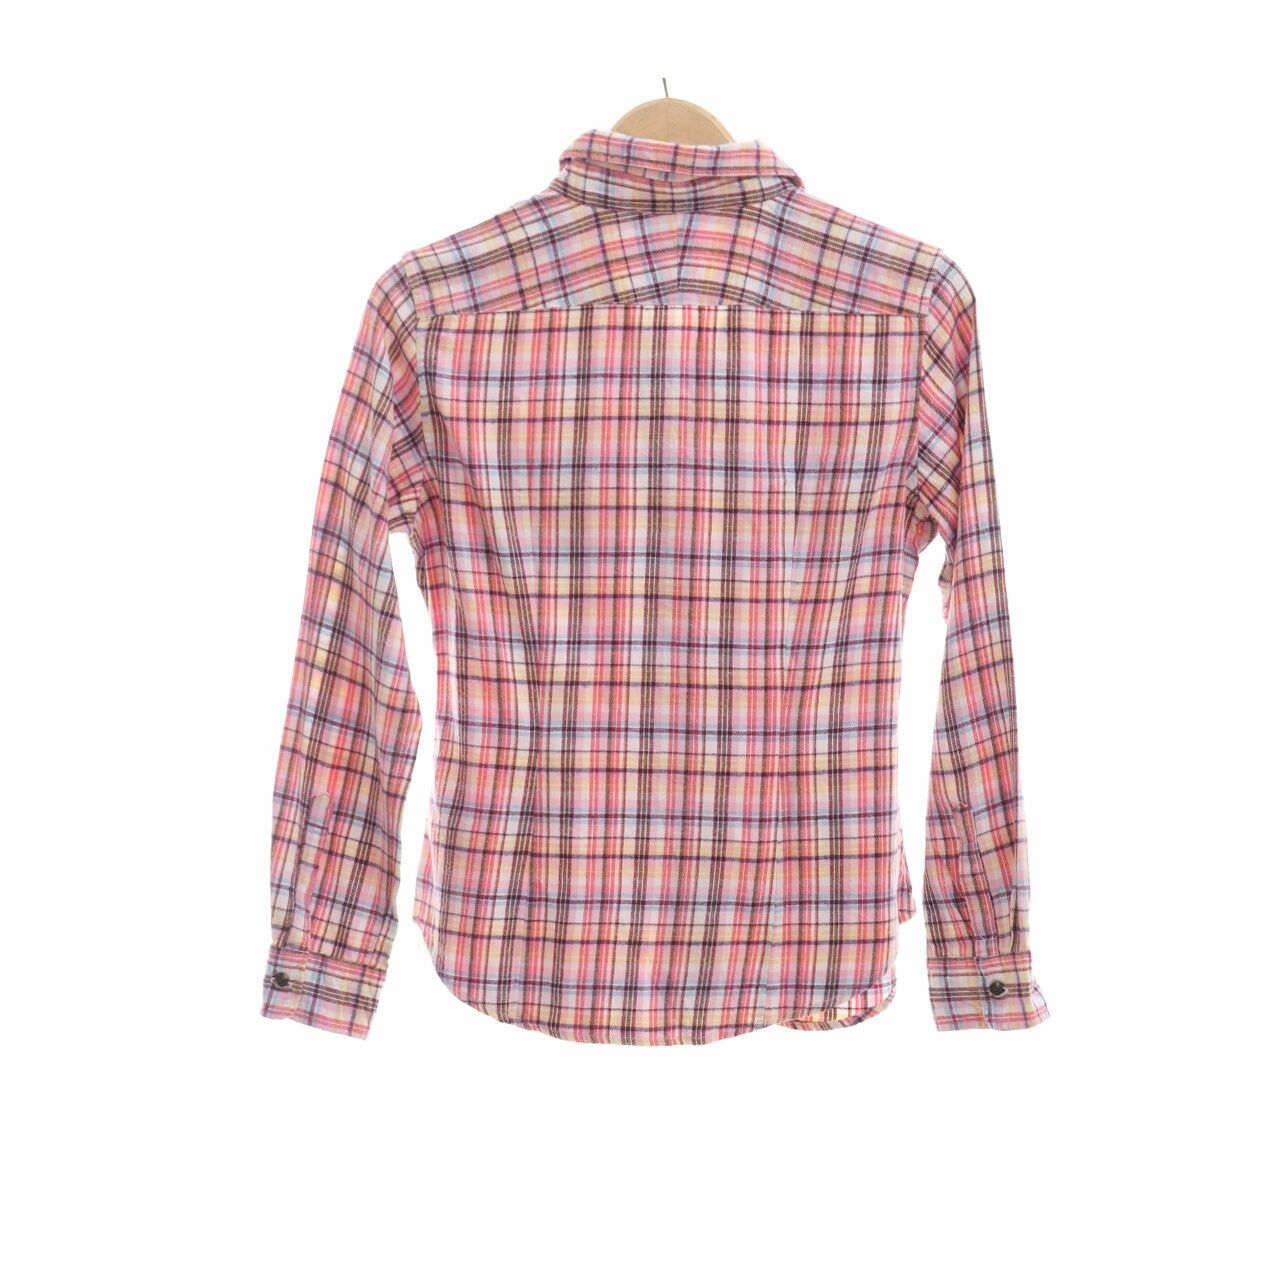 UNIQLO Pink & Multi Plaid Shirt